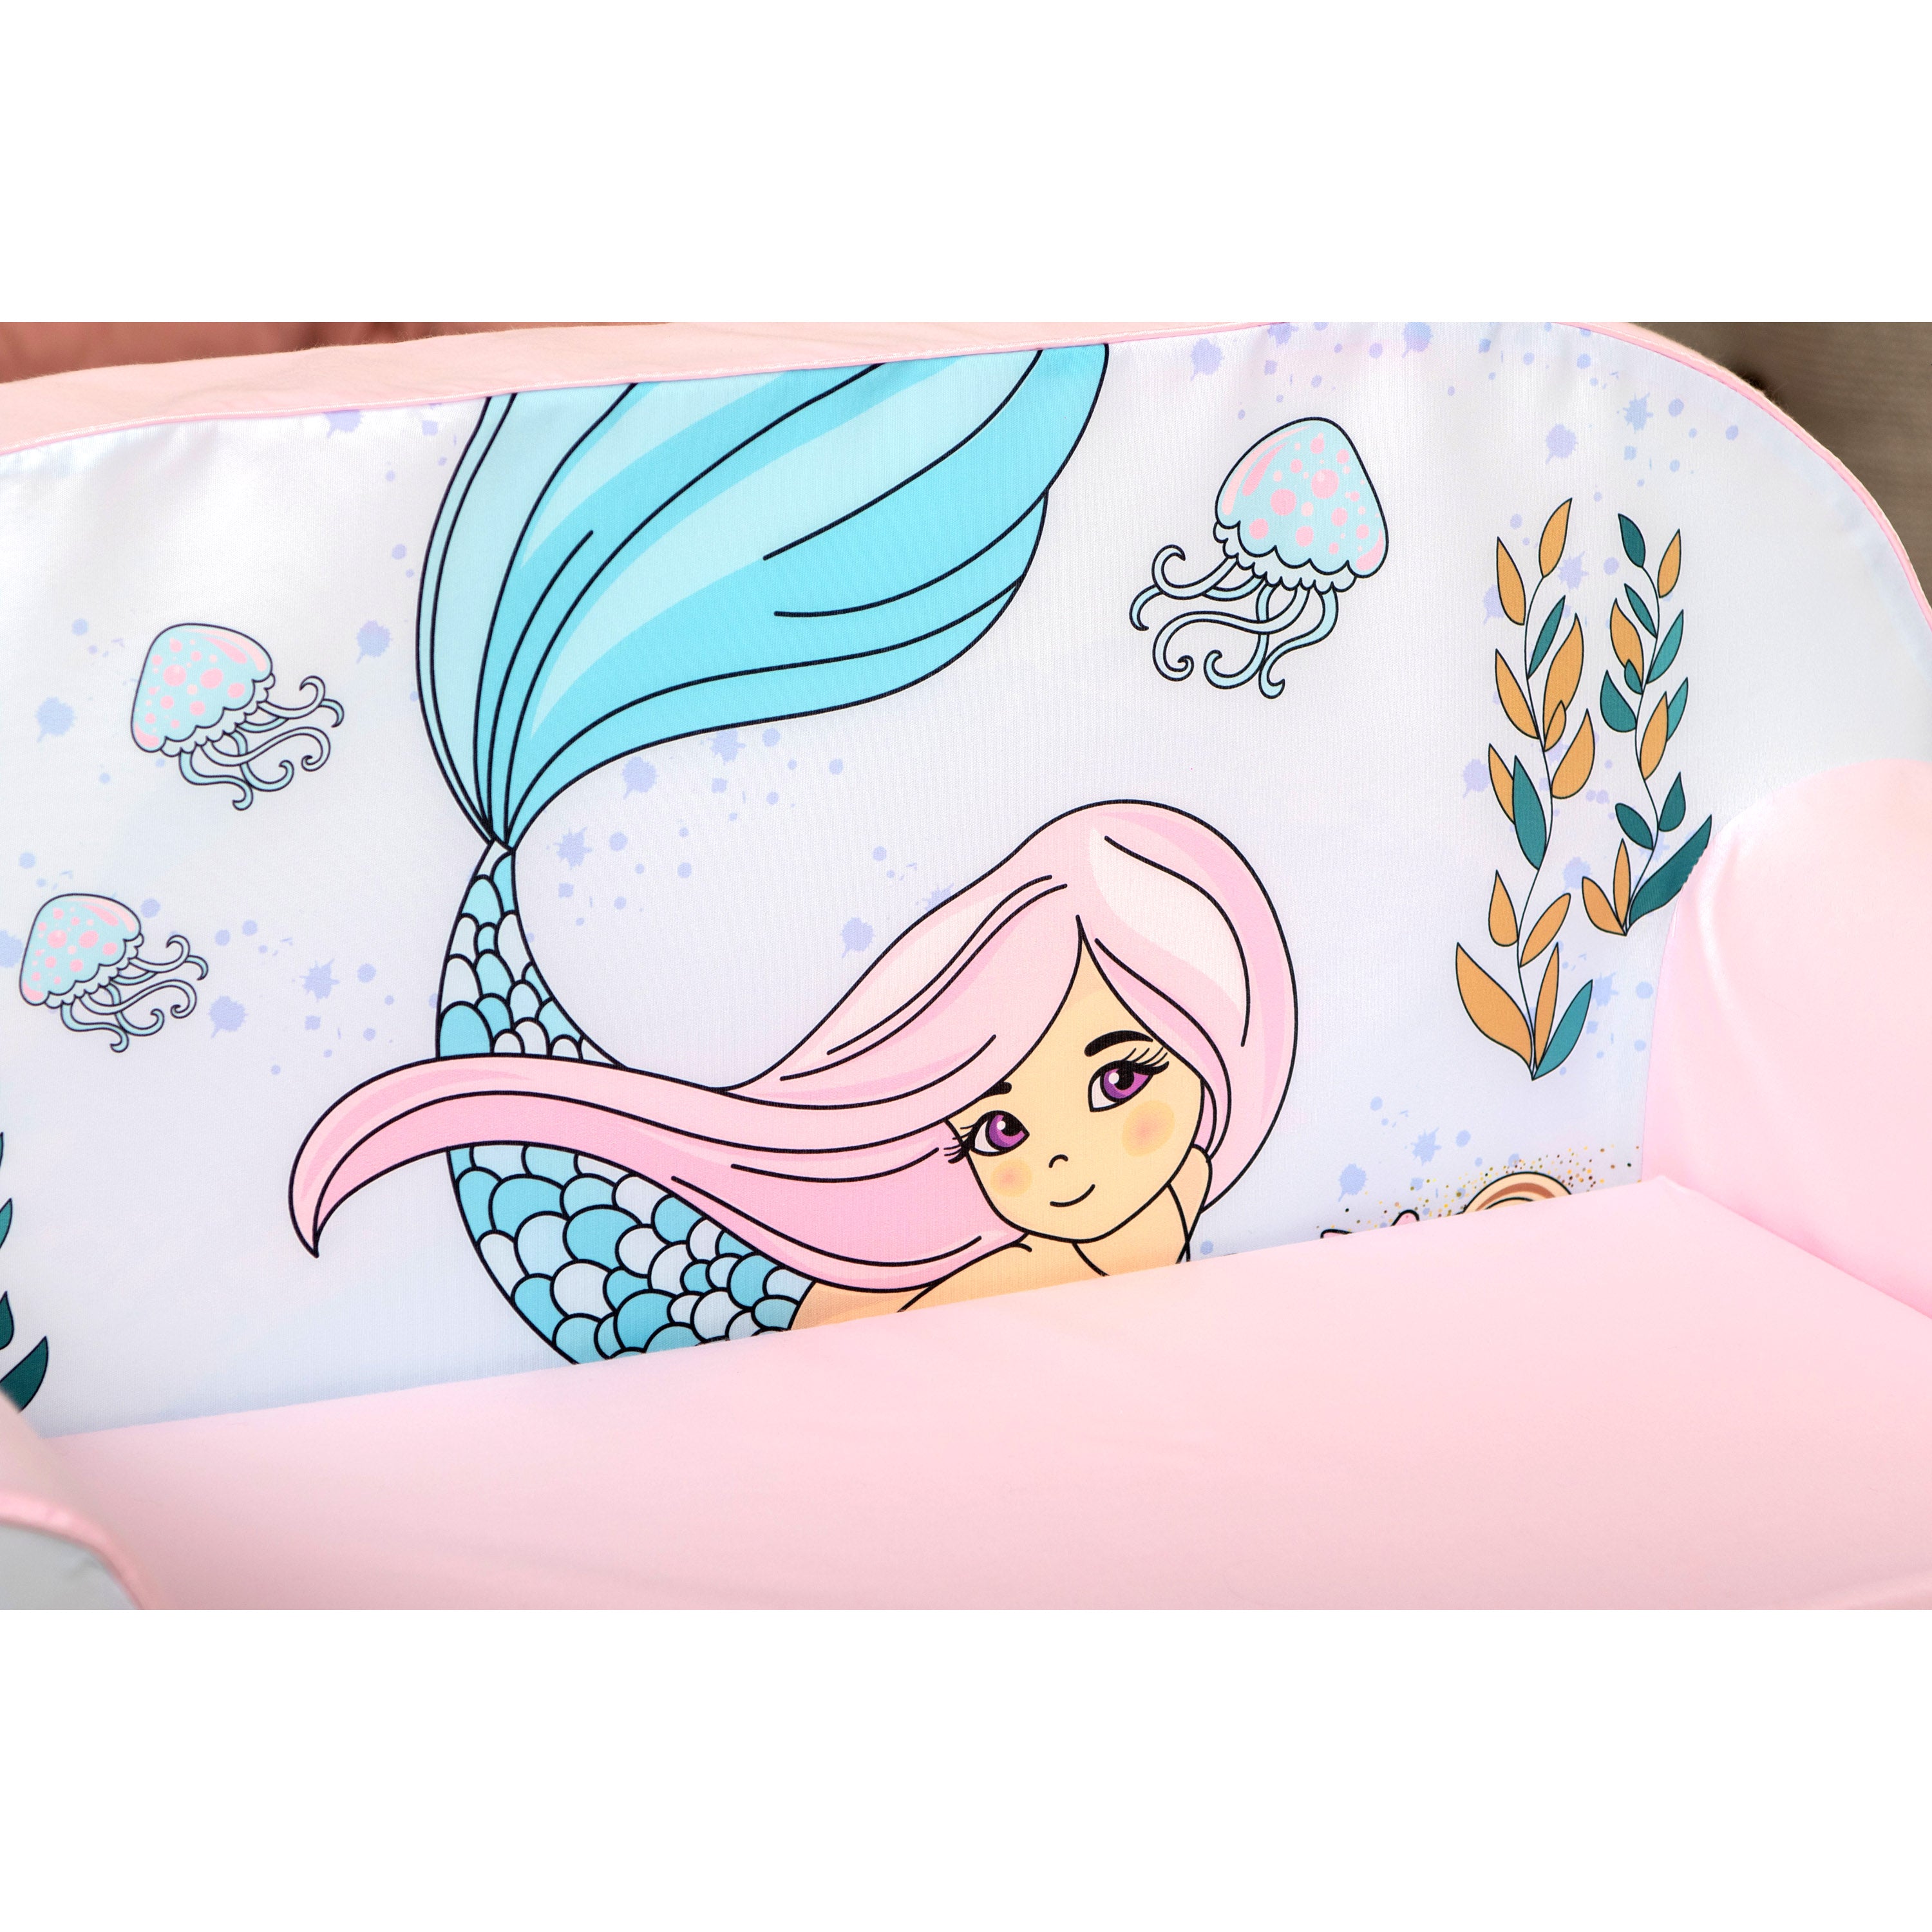 NEW Childrens Mermaid Set-Story Book-NWT Mermaid Plush Doll-Playdough Set-Bag